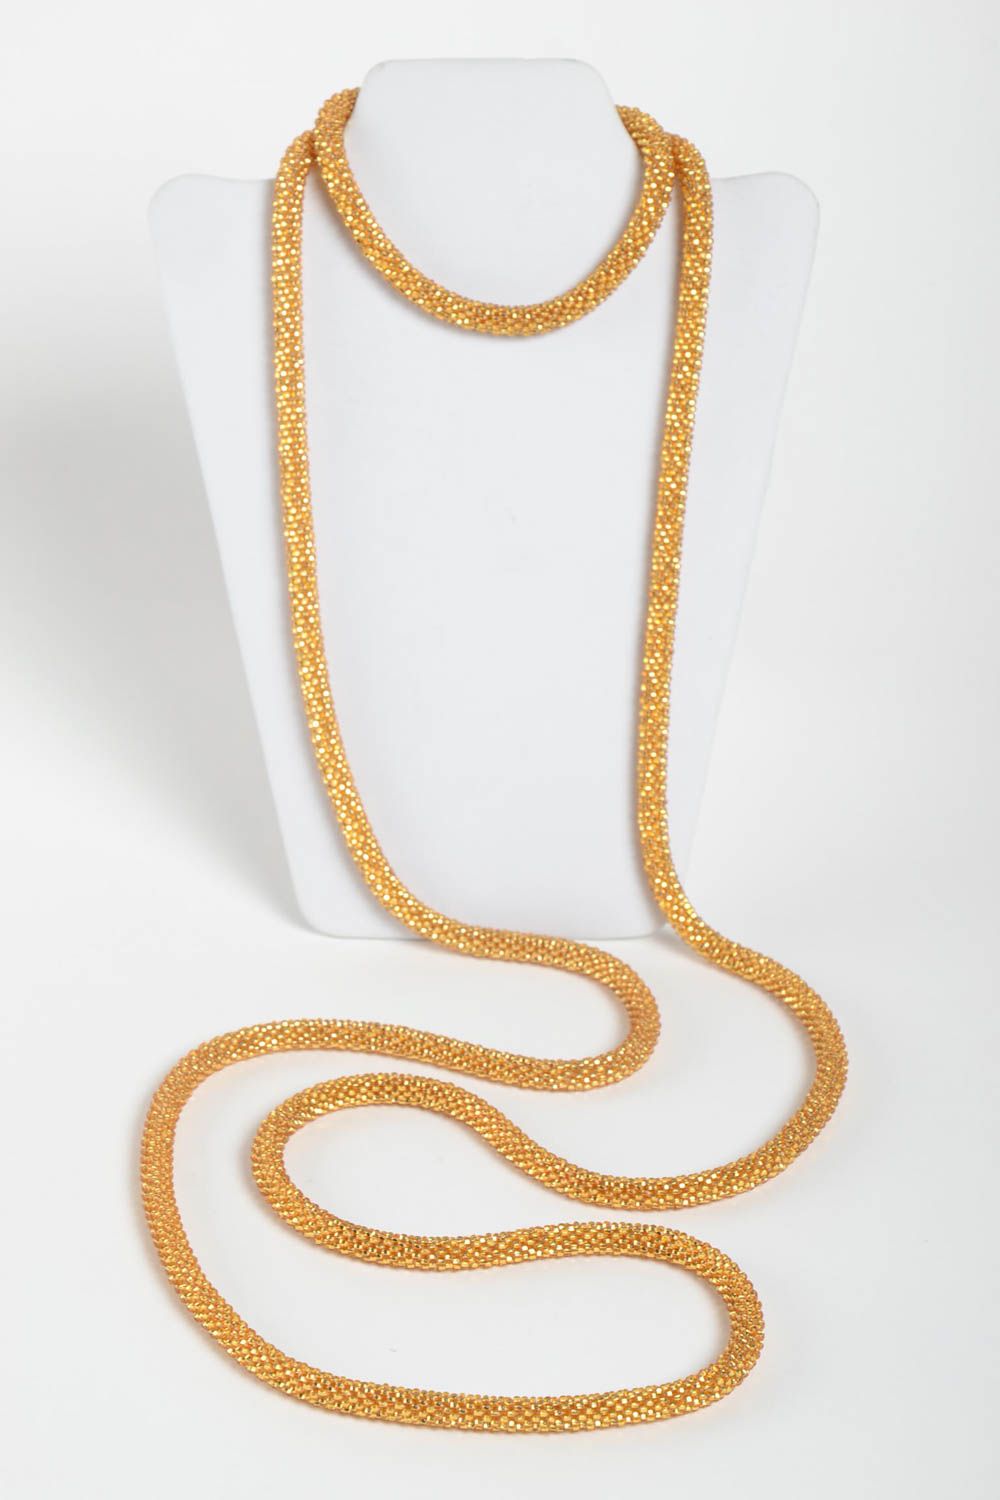 Ожерелье из бисера длинное золотистое красивое необычное ручной работы фото 3